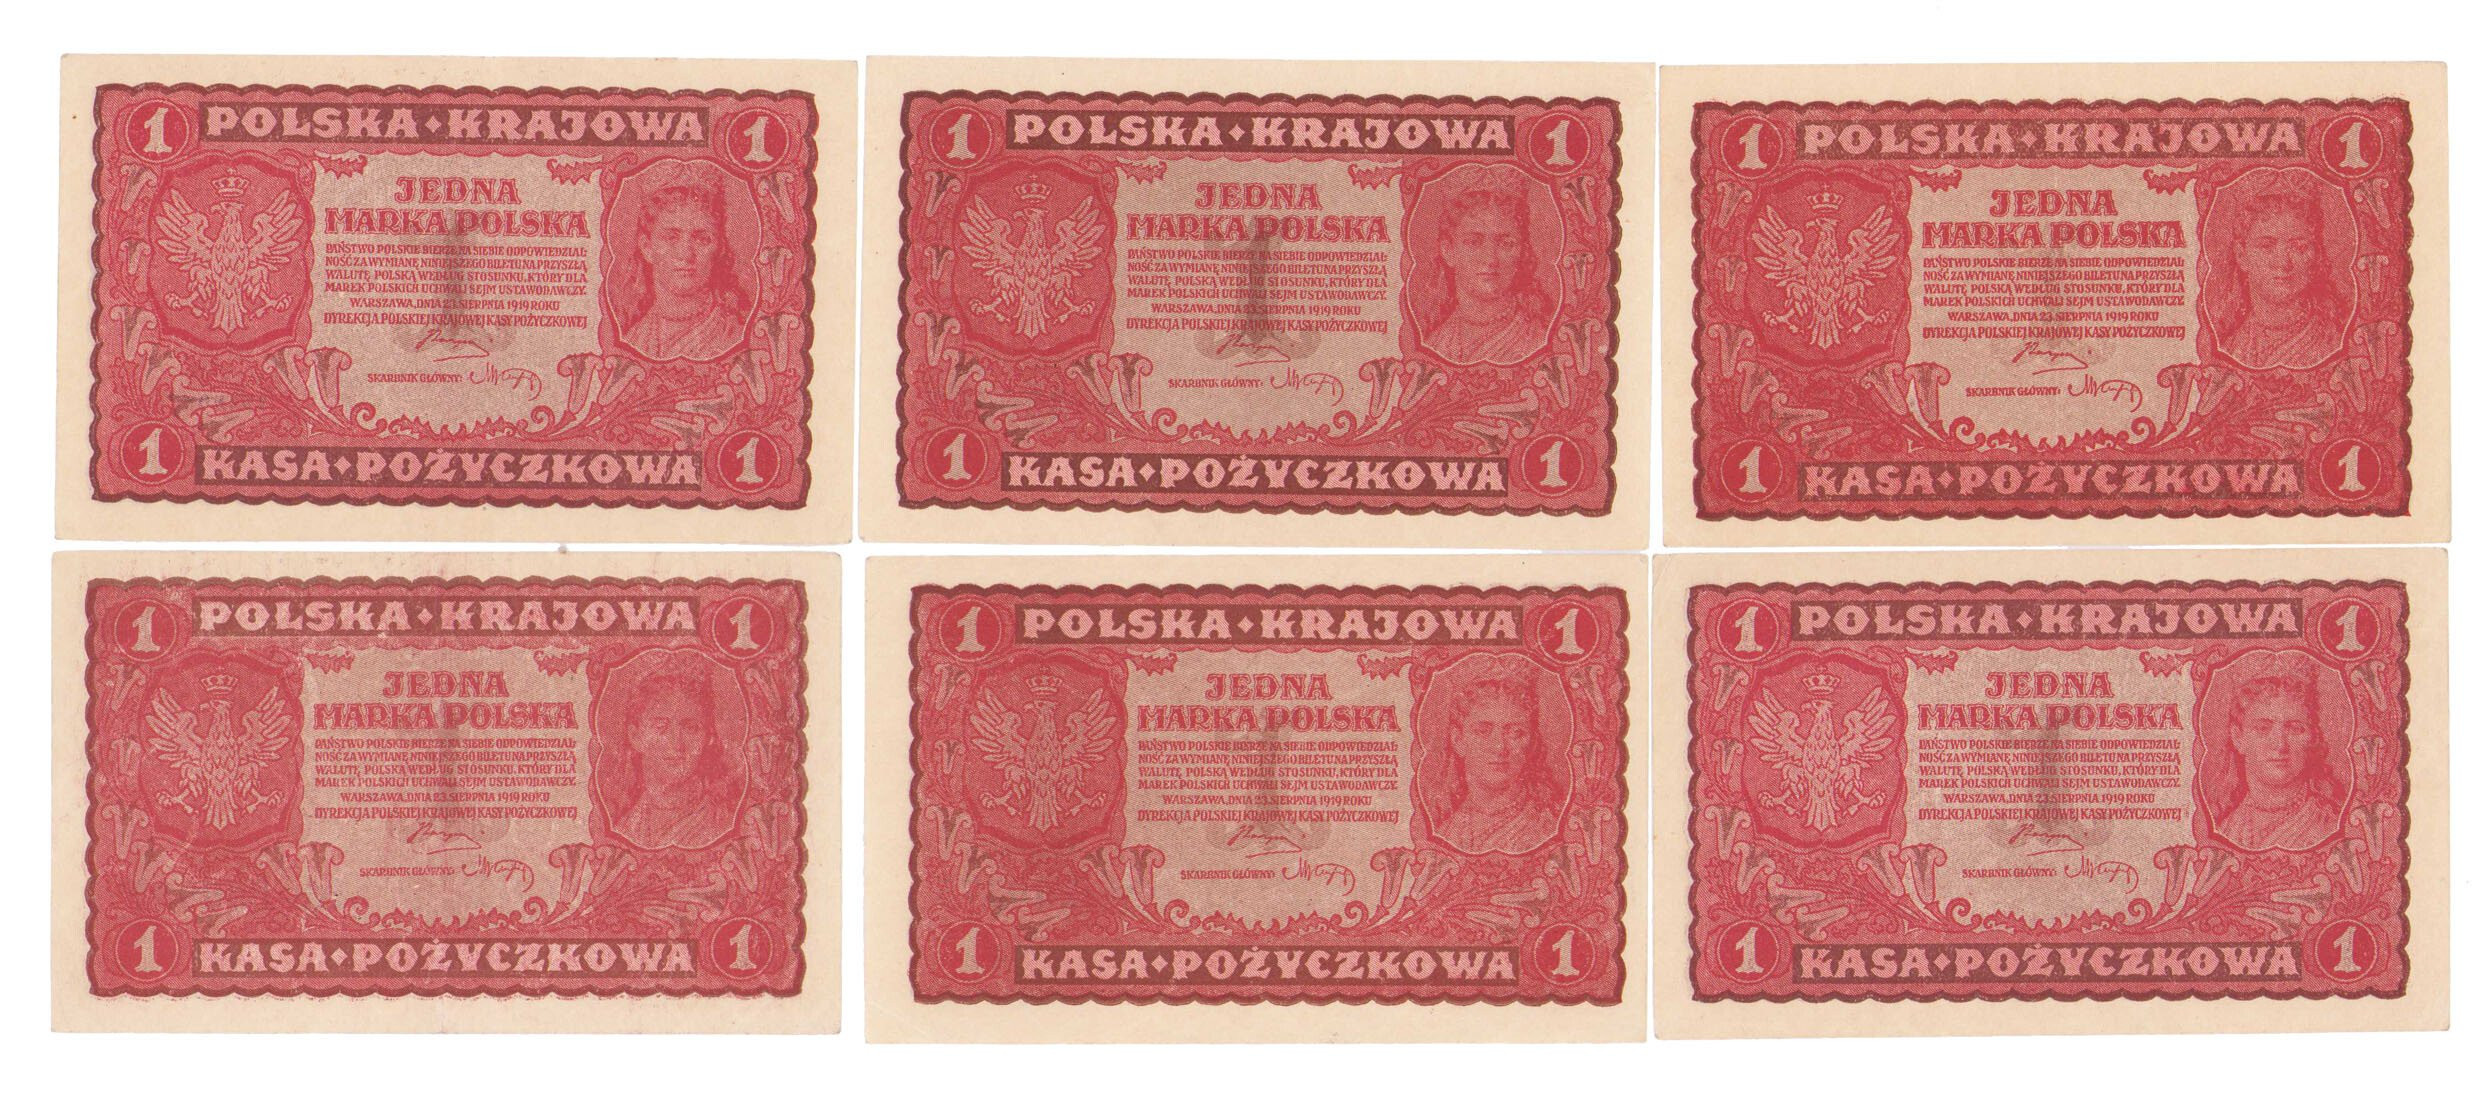 1 marka polska 1919 – zestaw 6 banknotów